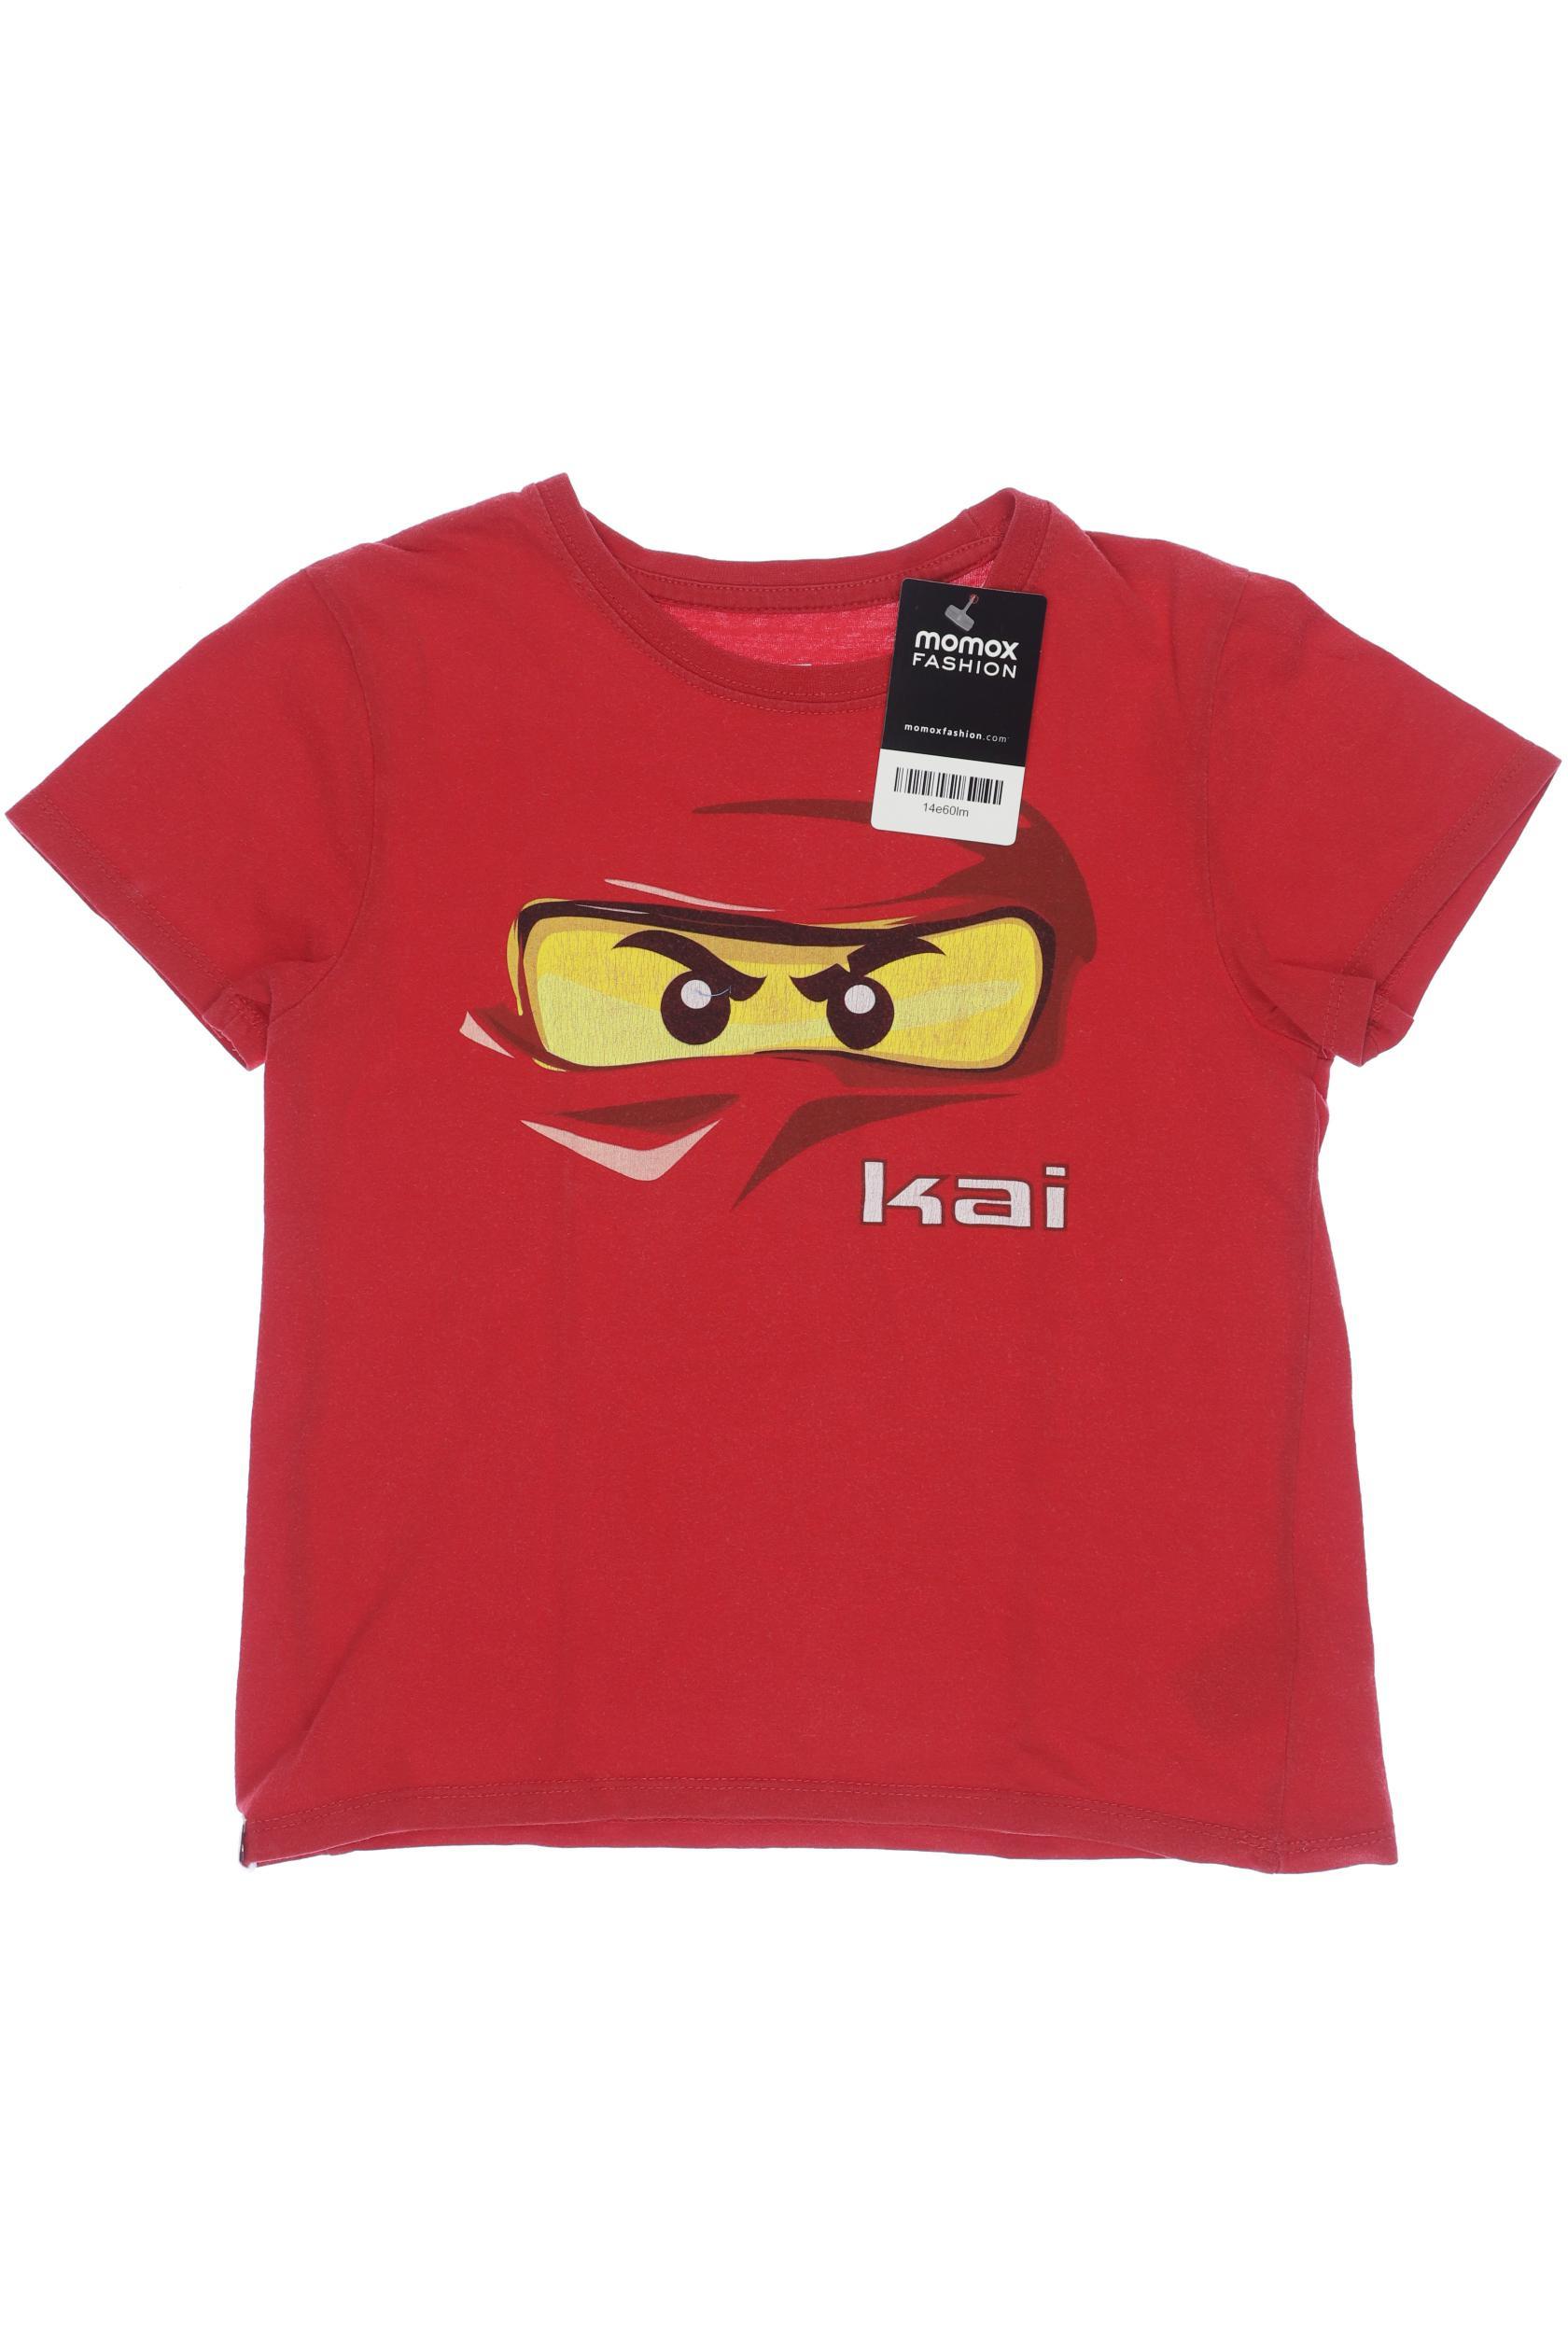 Lego Wear Jungen T-Shirt, rot von lego wear